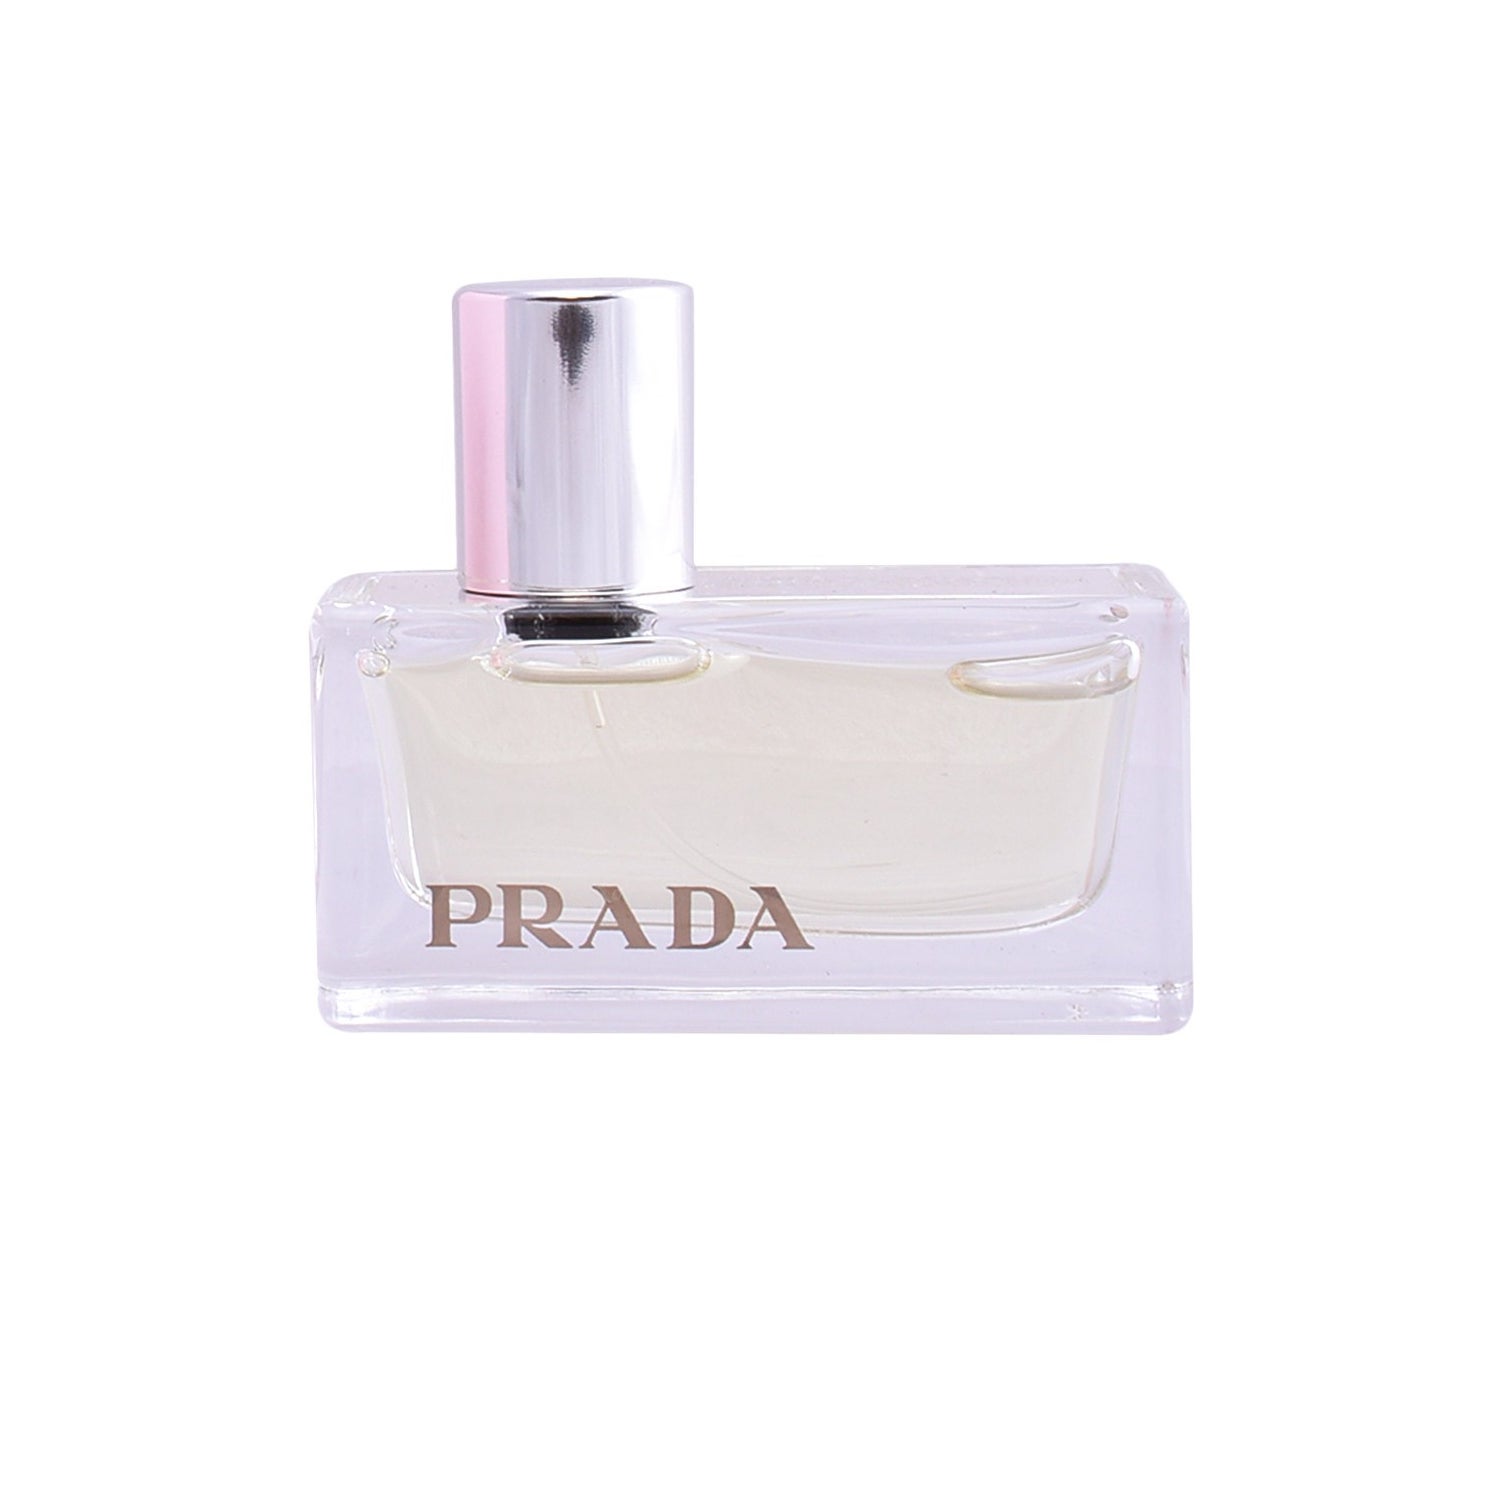  Prada Amber for Women Eau de Parfum Spray, 2.7 Fluid